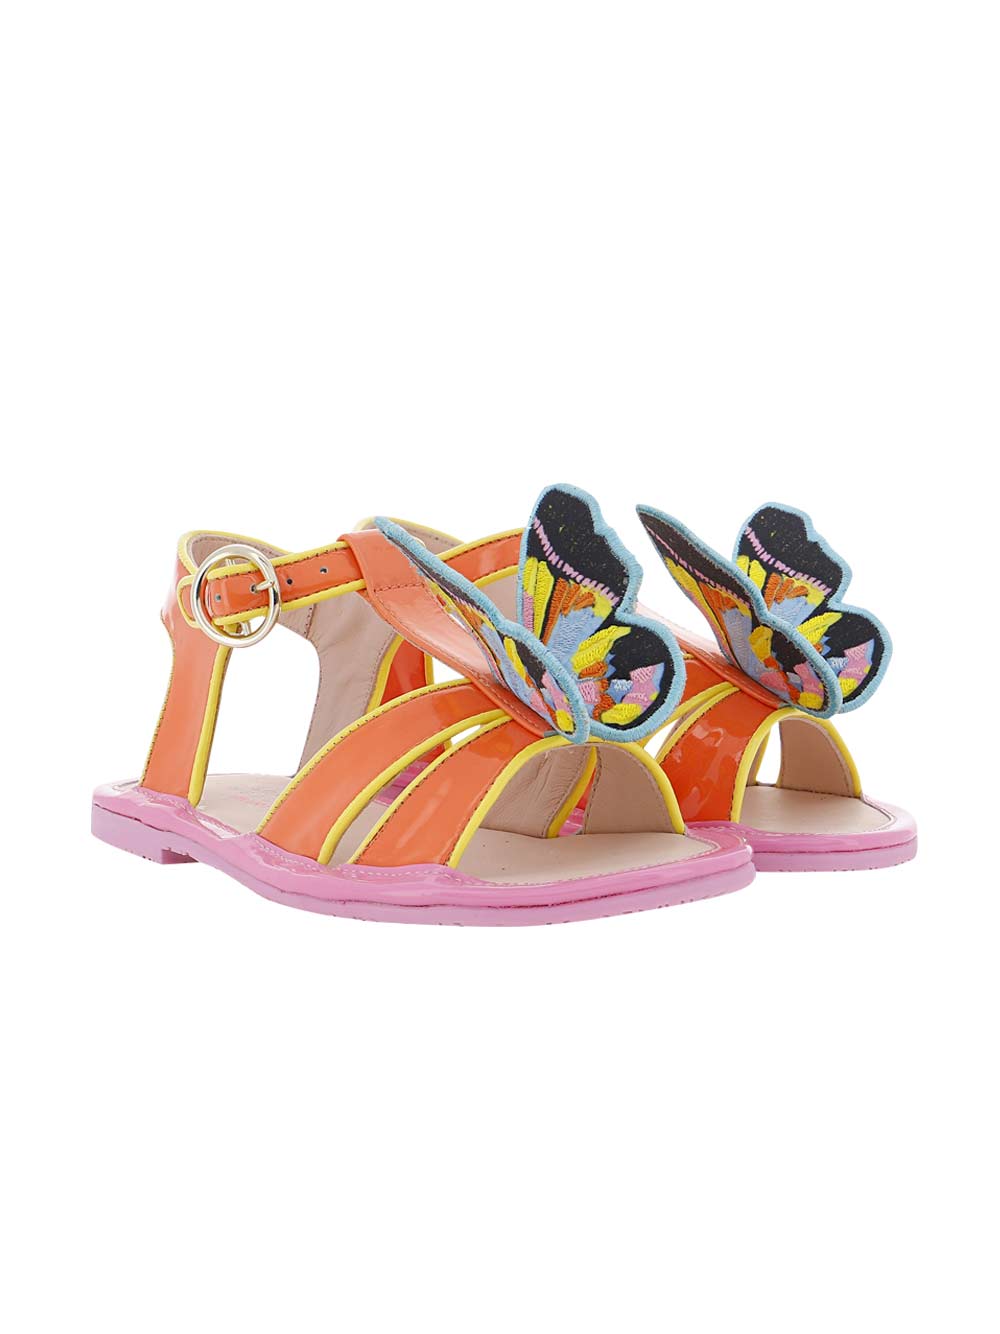 Celeste Summer Pop Art Sandals